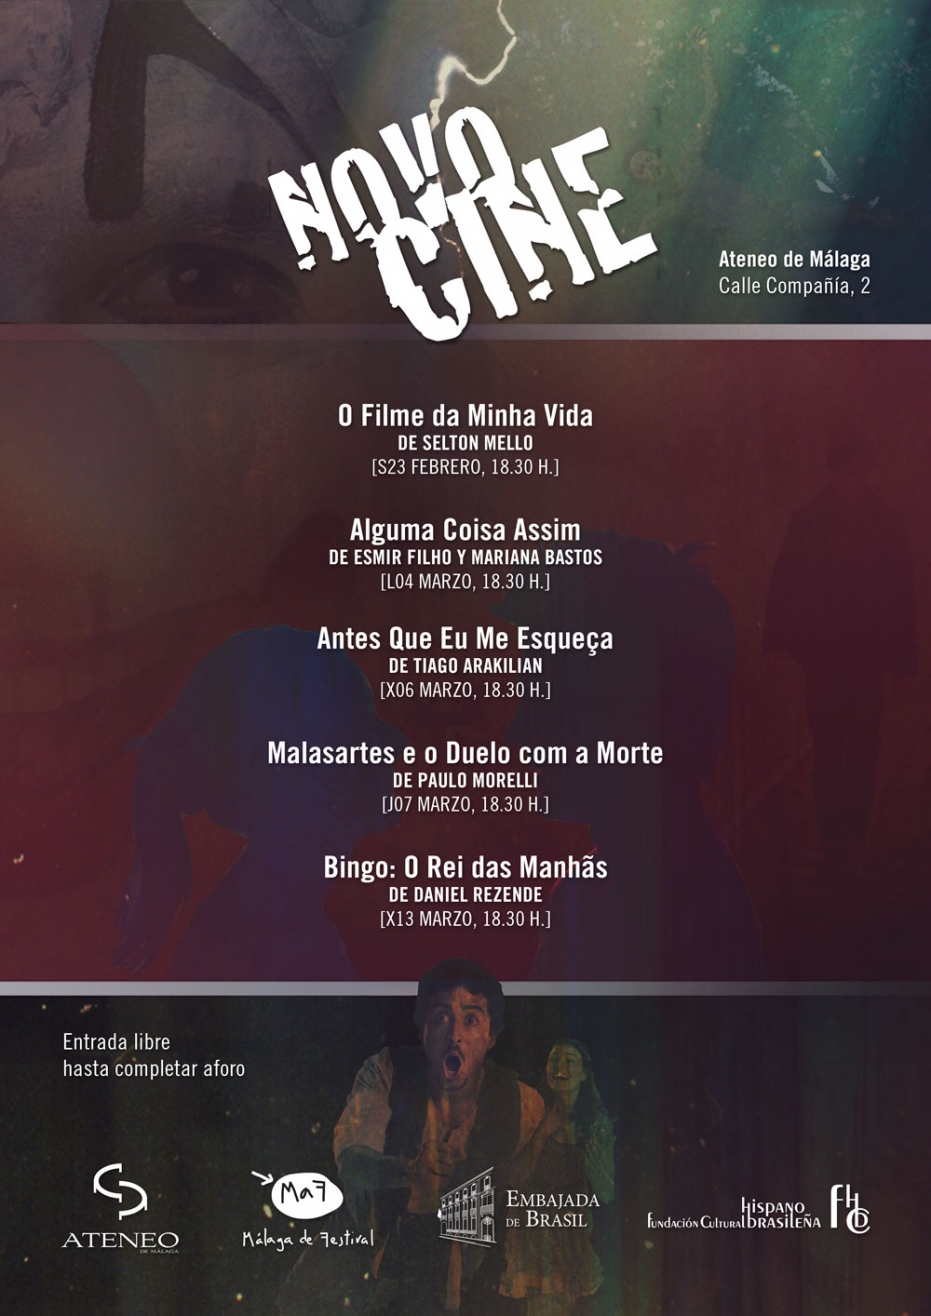 Cineclub Croma especial MaF. Sesión inaugural del II Ciclo de Cine Novocine: proyección de 'O Filme da Minha Vida', de Selton Mello. En colaboración con la Embajada de Brasil y la Fundación Cultural Hispano Brasileña